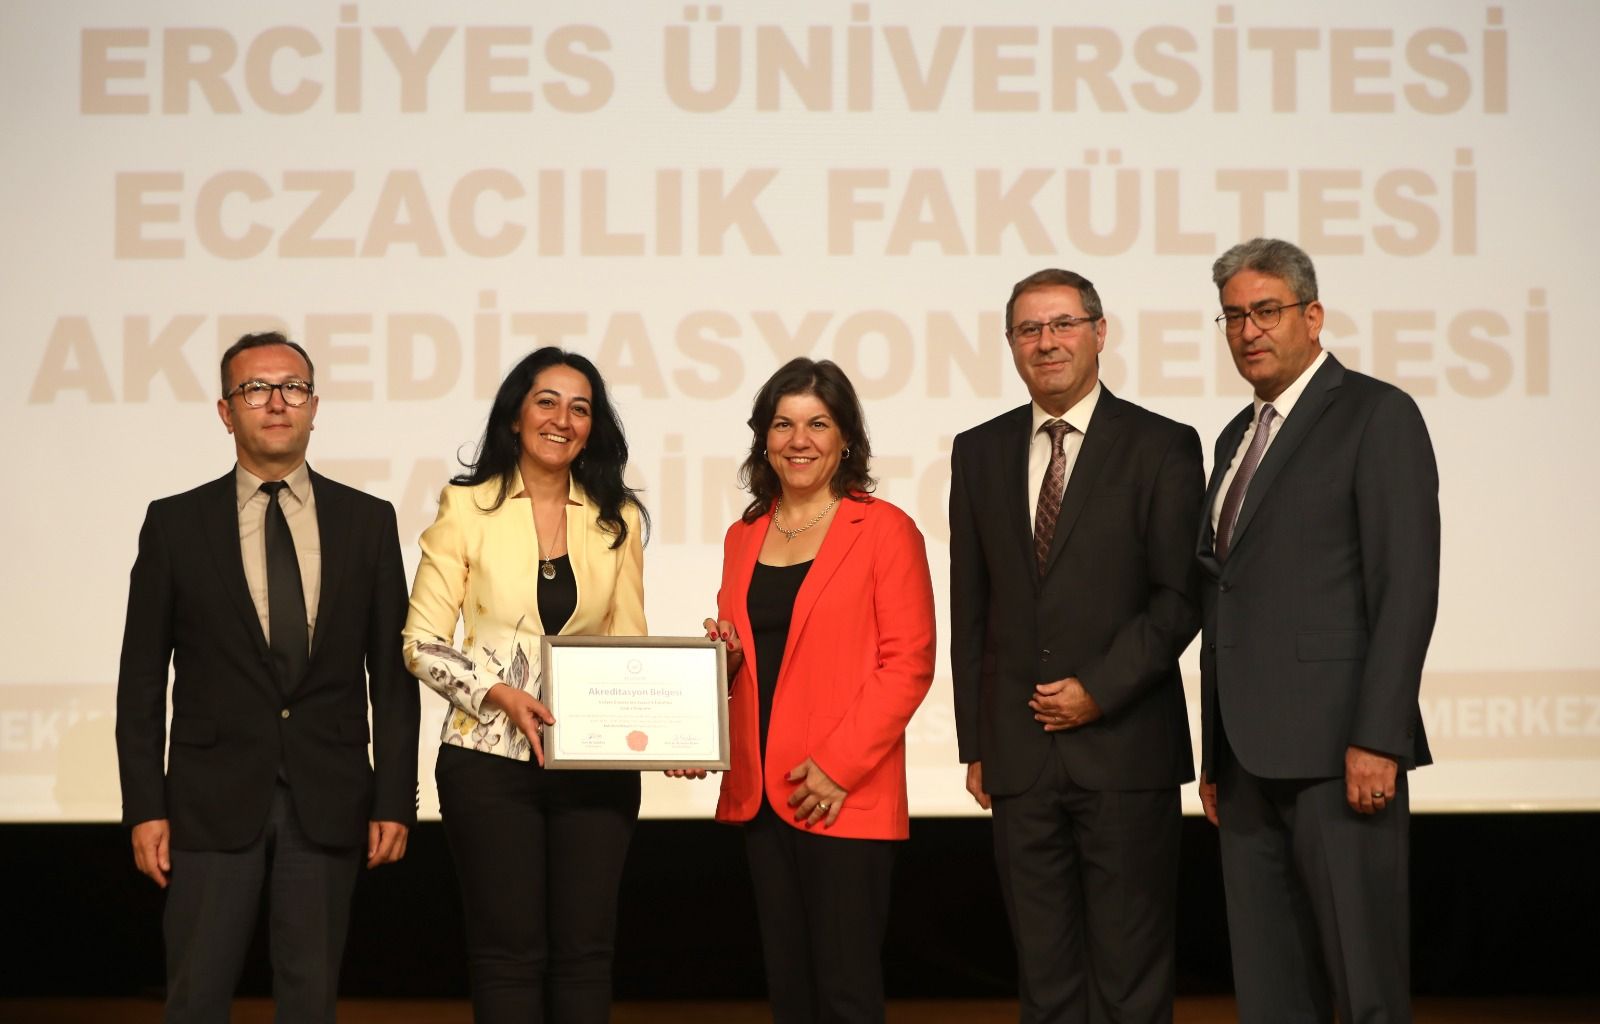 Erciyes Üniversitesi Eczacılık Fakültesi Akreditasyon Belgesi Takdim Töreni